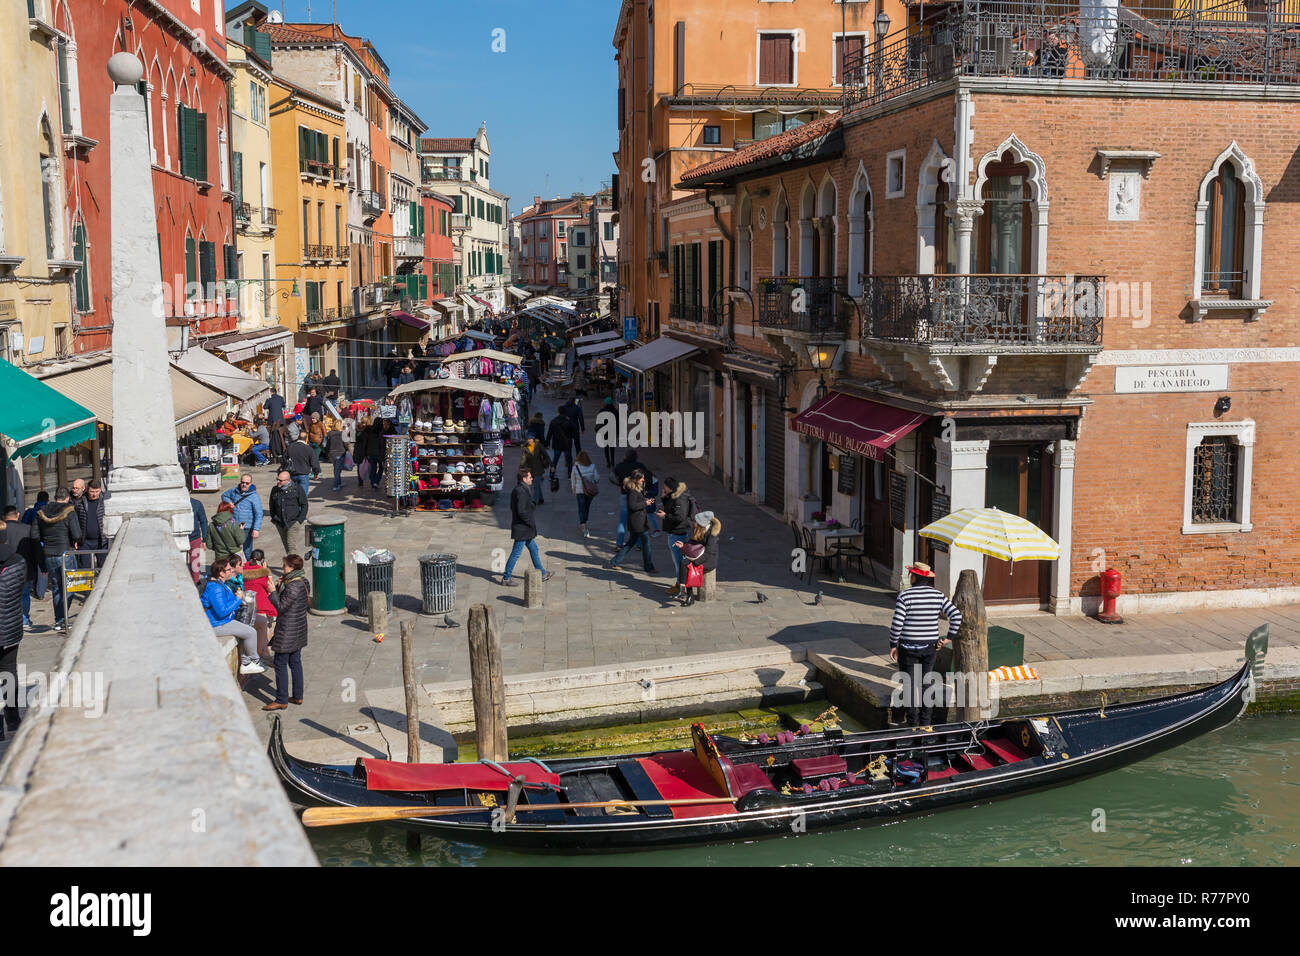 Venise, Italie - 23 mars 2018 : Gondola gratuit sur un Grand Canal à Venise Banque D'Images